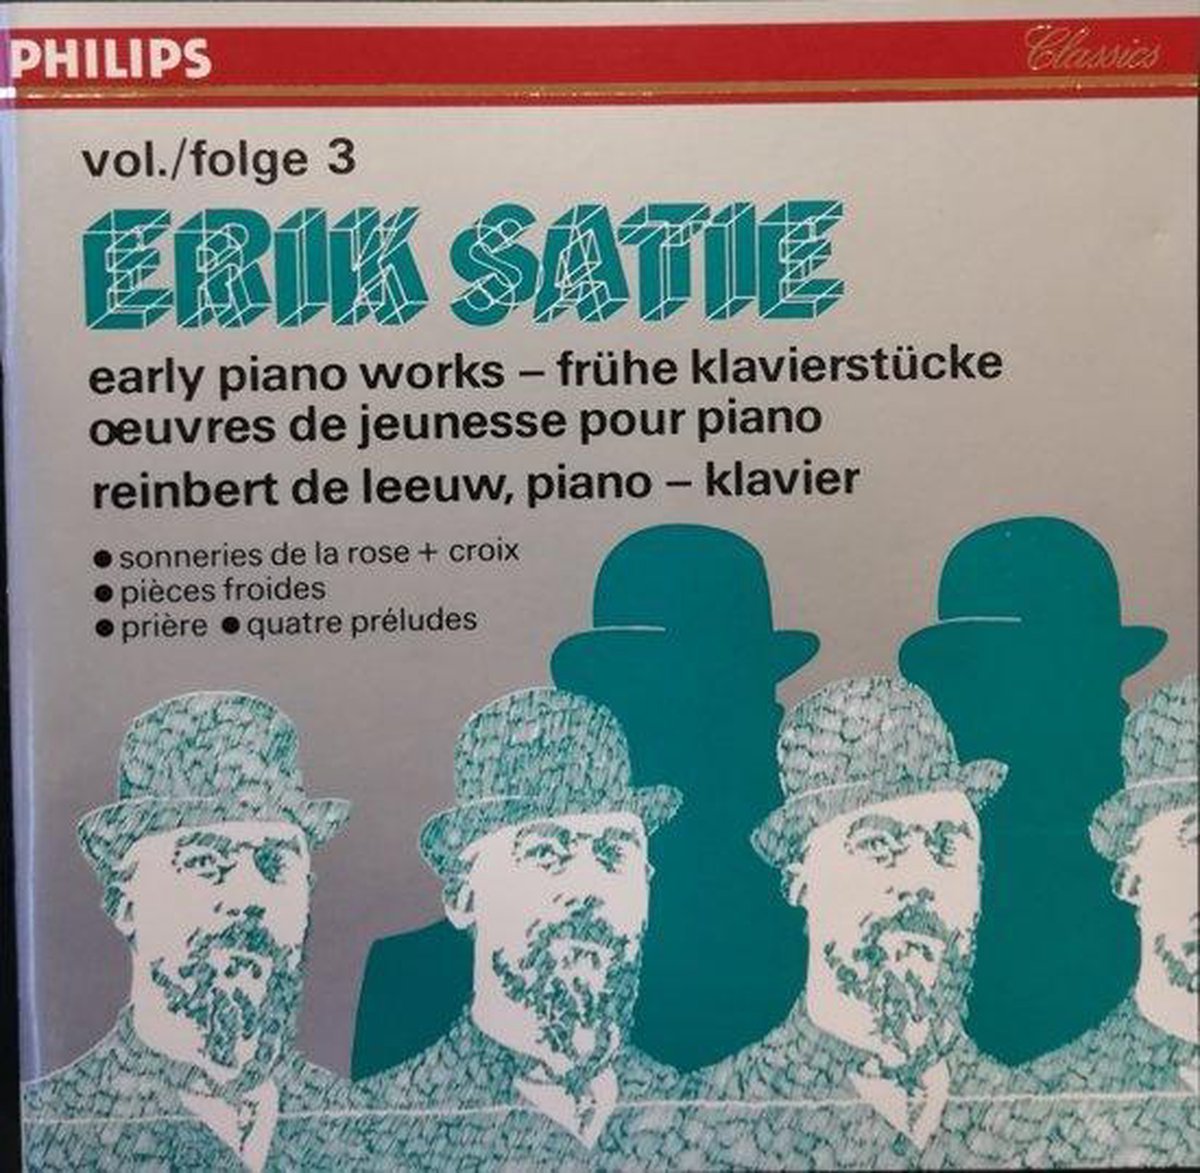 erik satie early piano works rar extractor